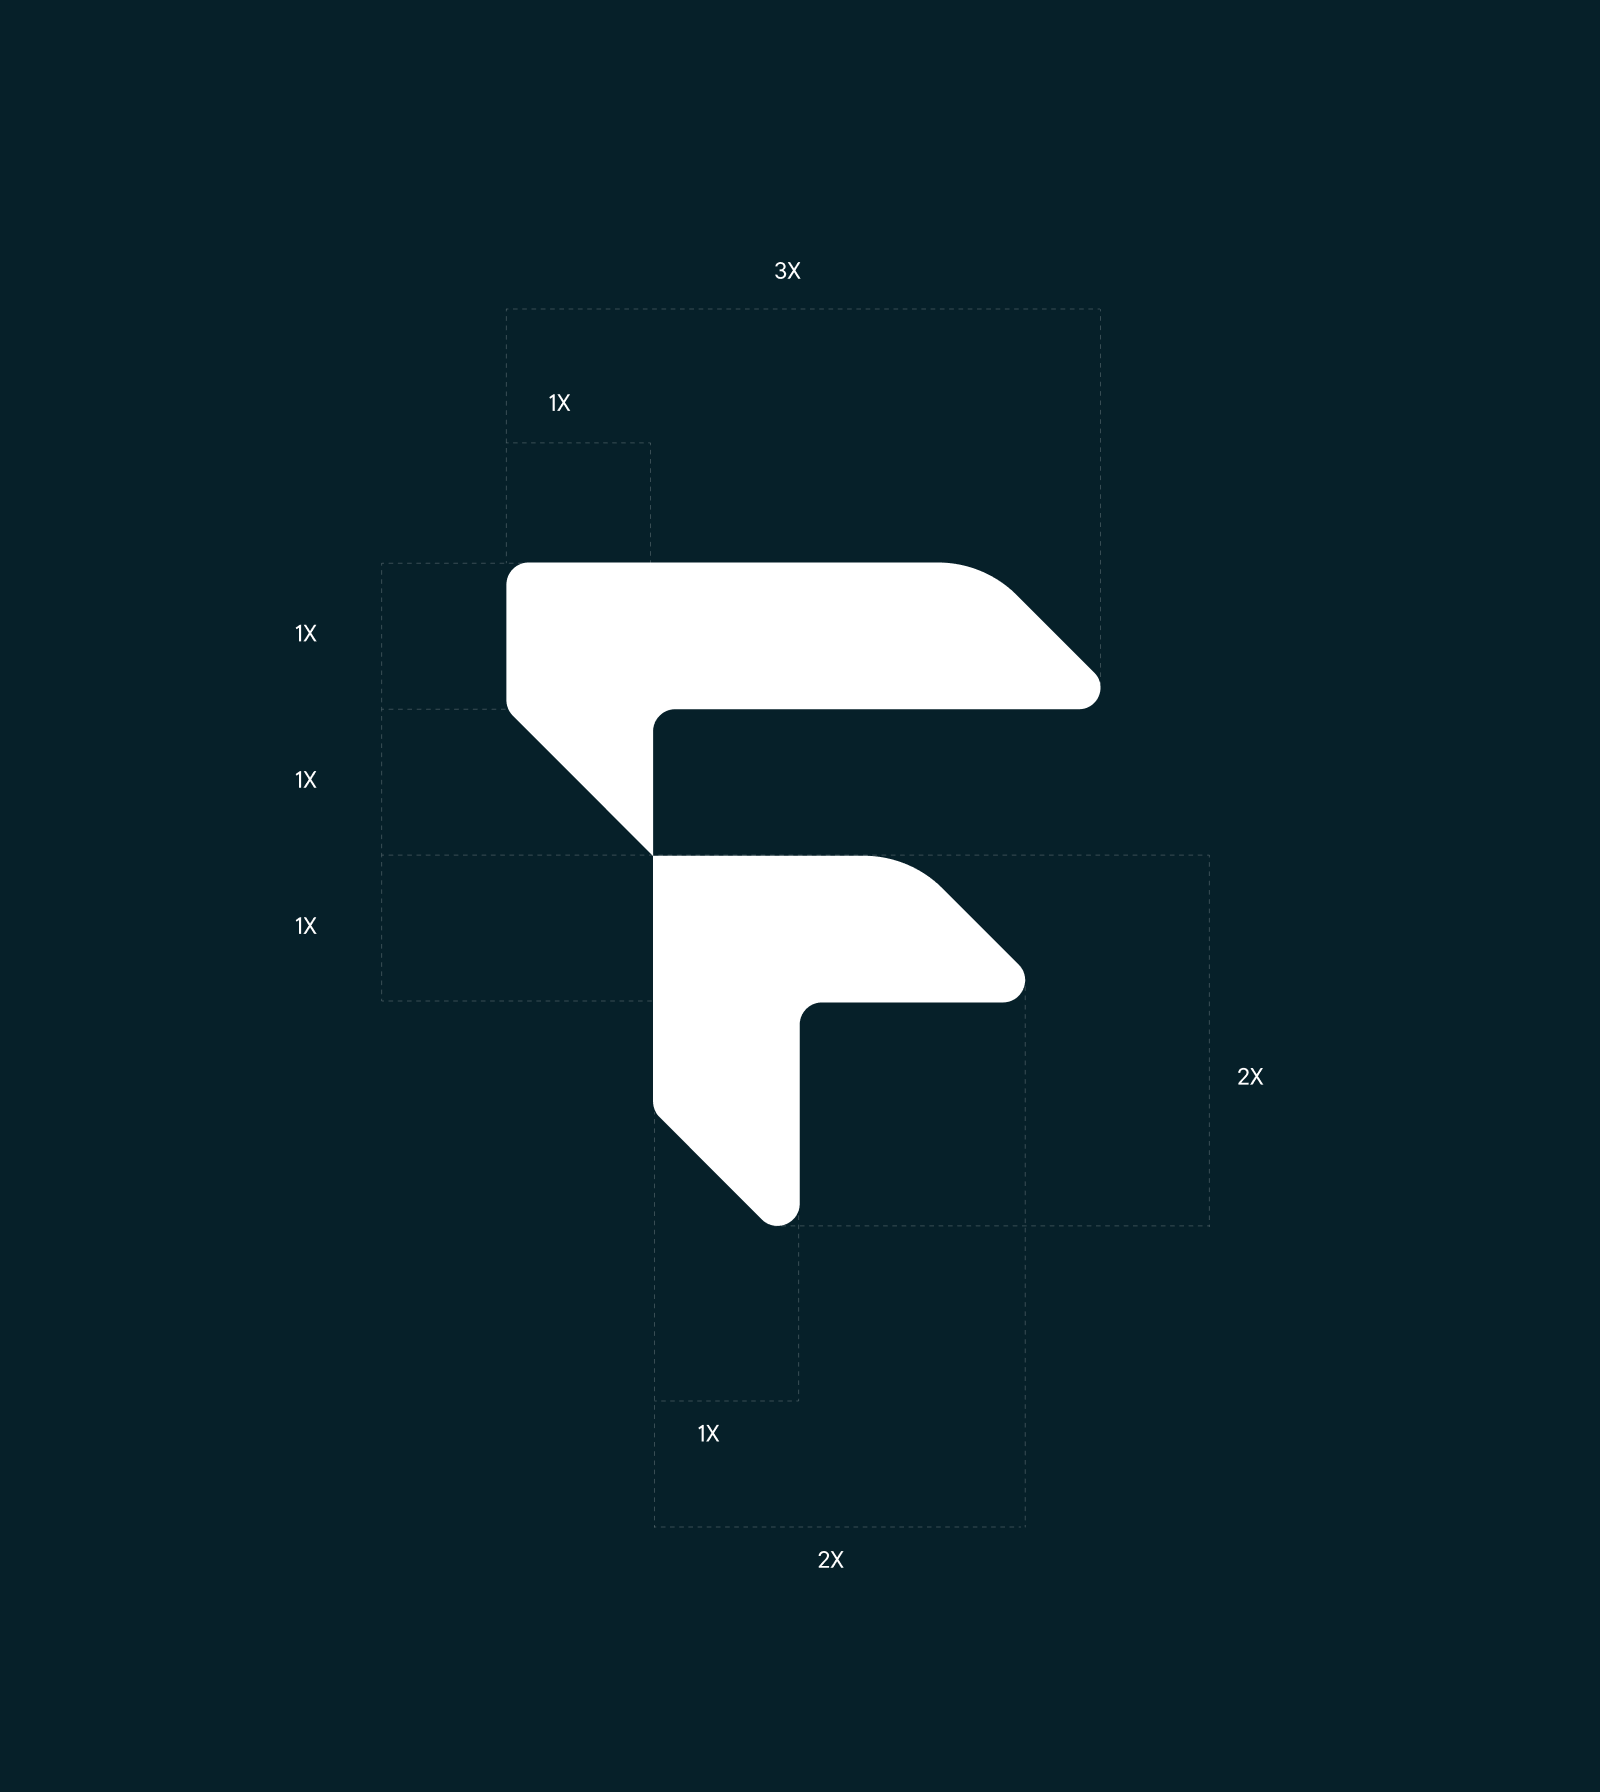 frg-logo1